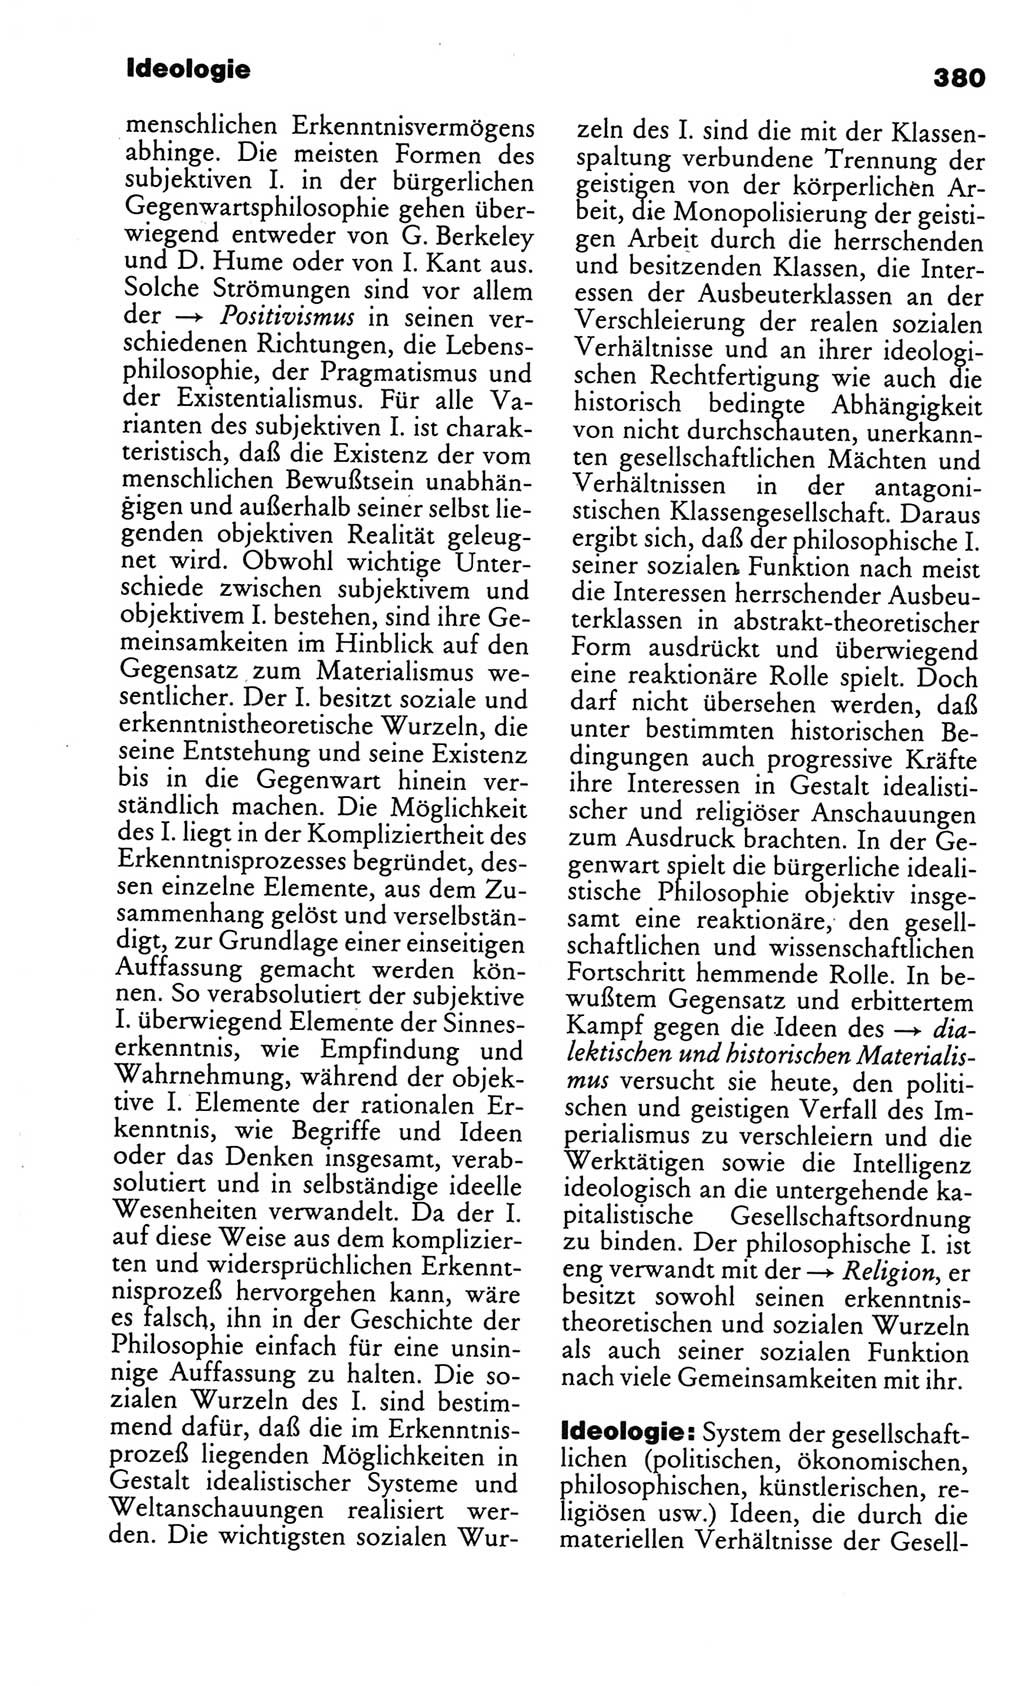 Kleines politisches Wörterbuch [Deutsche Demokratische Republik (DDR)] 1986, Seite 380 (Kl. pol. Wb. DDR 1986, S. 380)